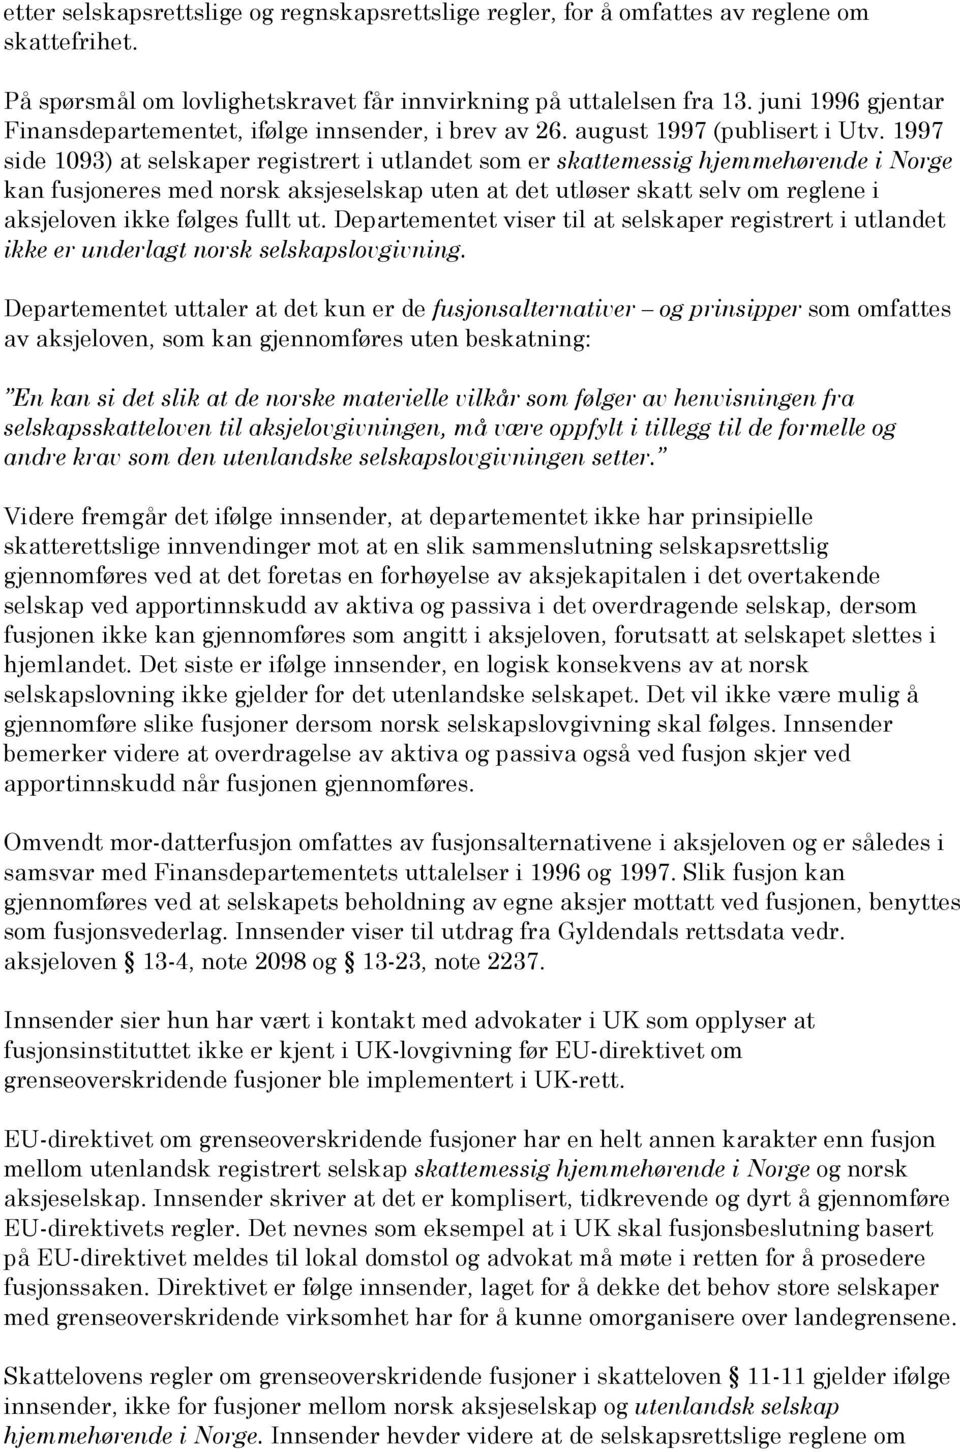 1997 side 1093) at selskaper registrert i utlandet som er skattemessig hjemmehørende i Norge kan fusjoneres med norsk aksjeselskap uten at det utløser skatt selv om reglene i aksjeloven ikke følges